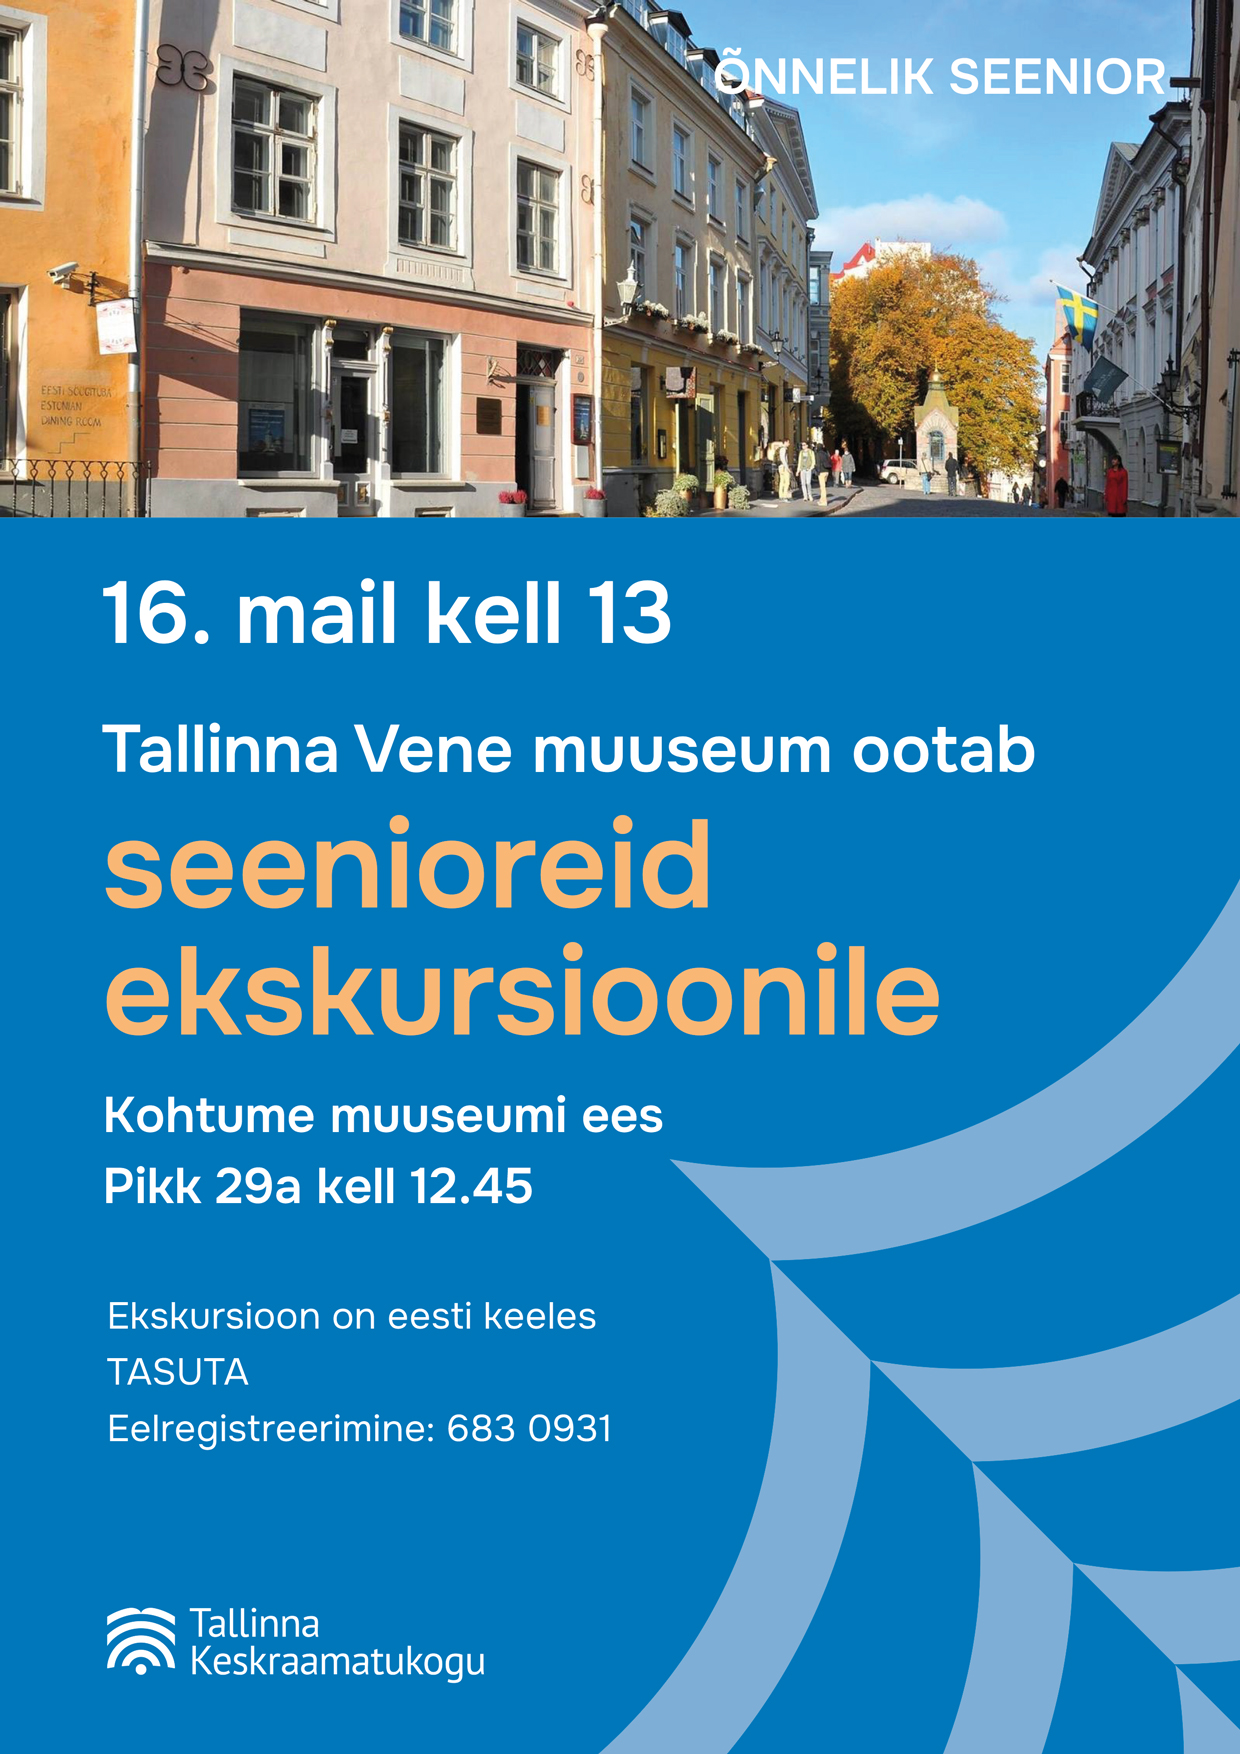 Õnnelik seenior: ekskursioon Tallinna Vene muuseumi